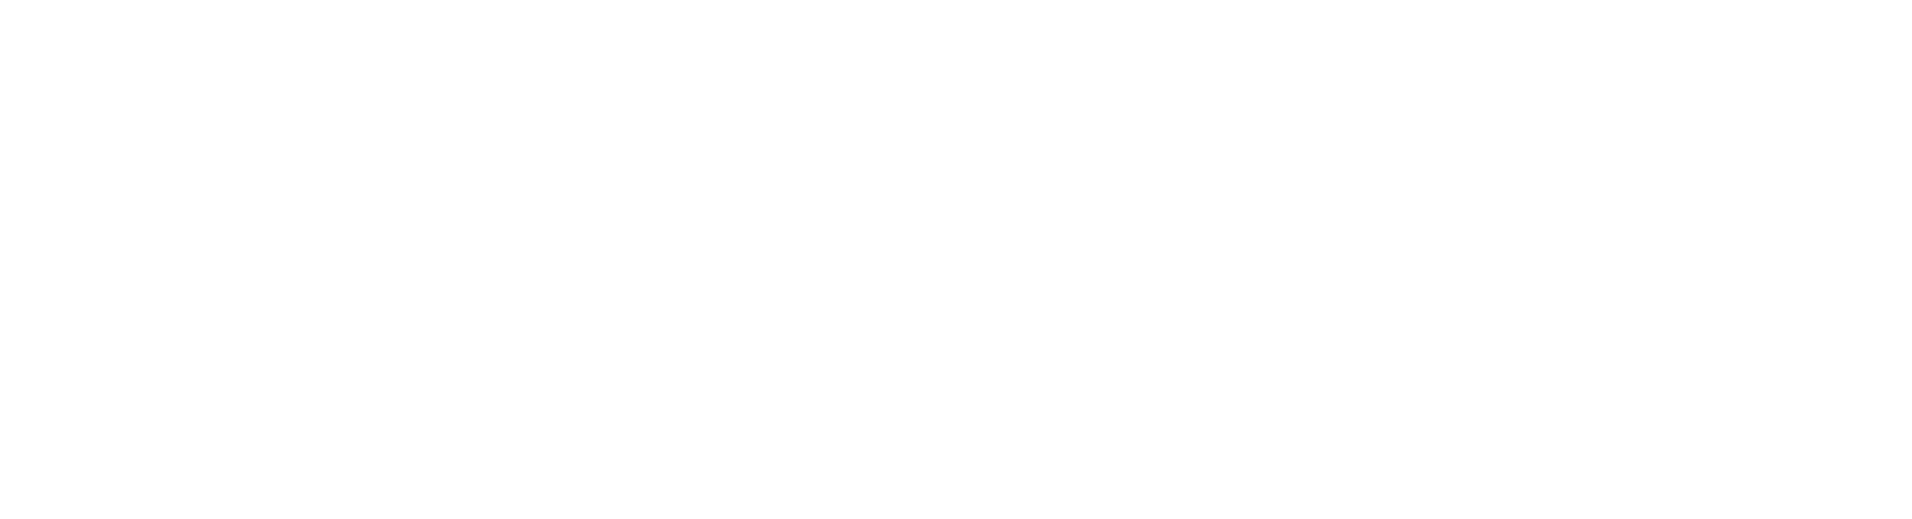 Skyco Group